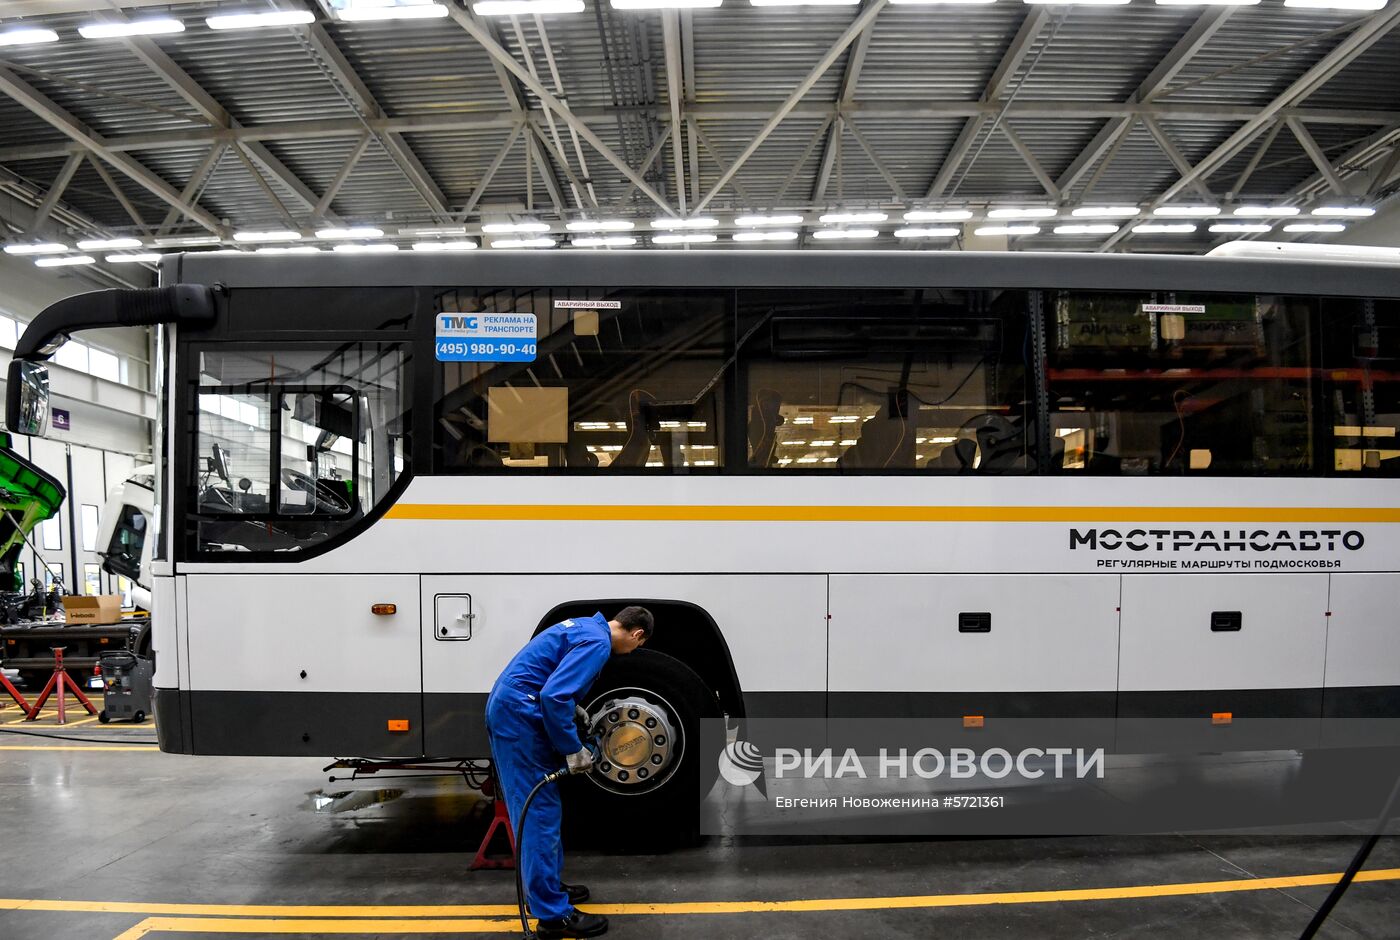 Обслуживание автобусов Мострансавто в сервисном центре "Скания"